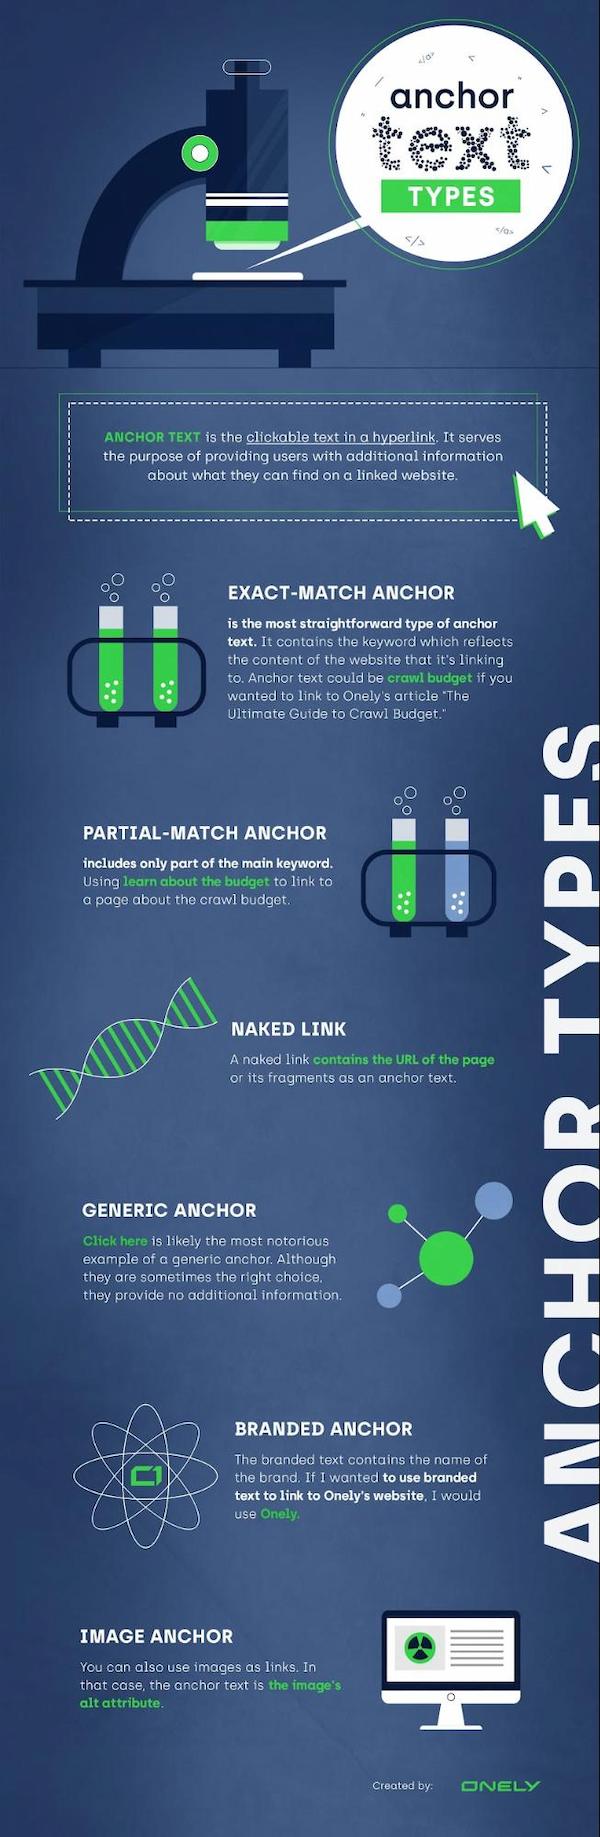 An infographic describing all types of anchor text